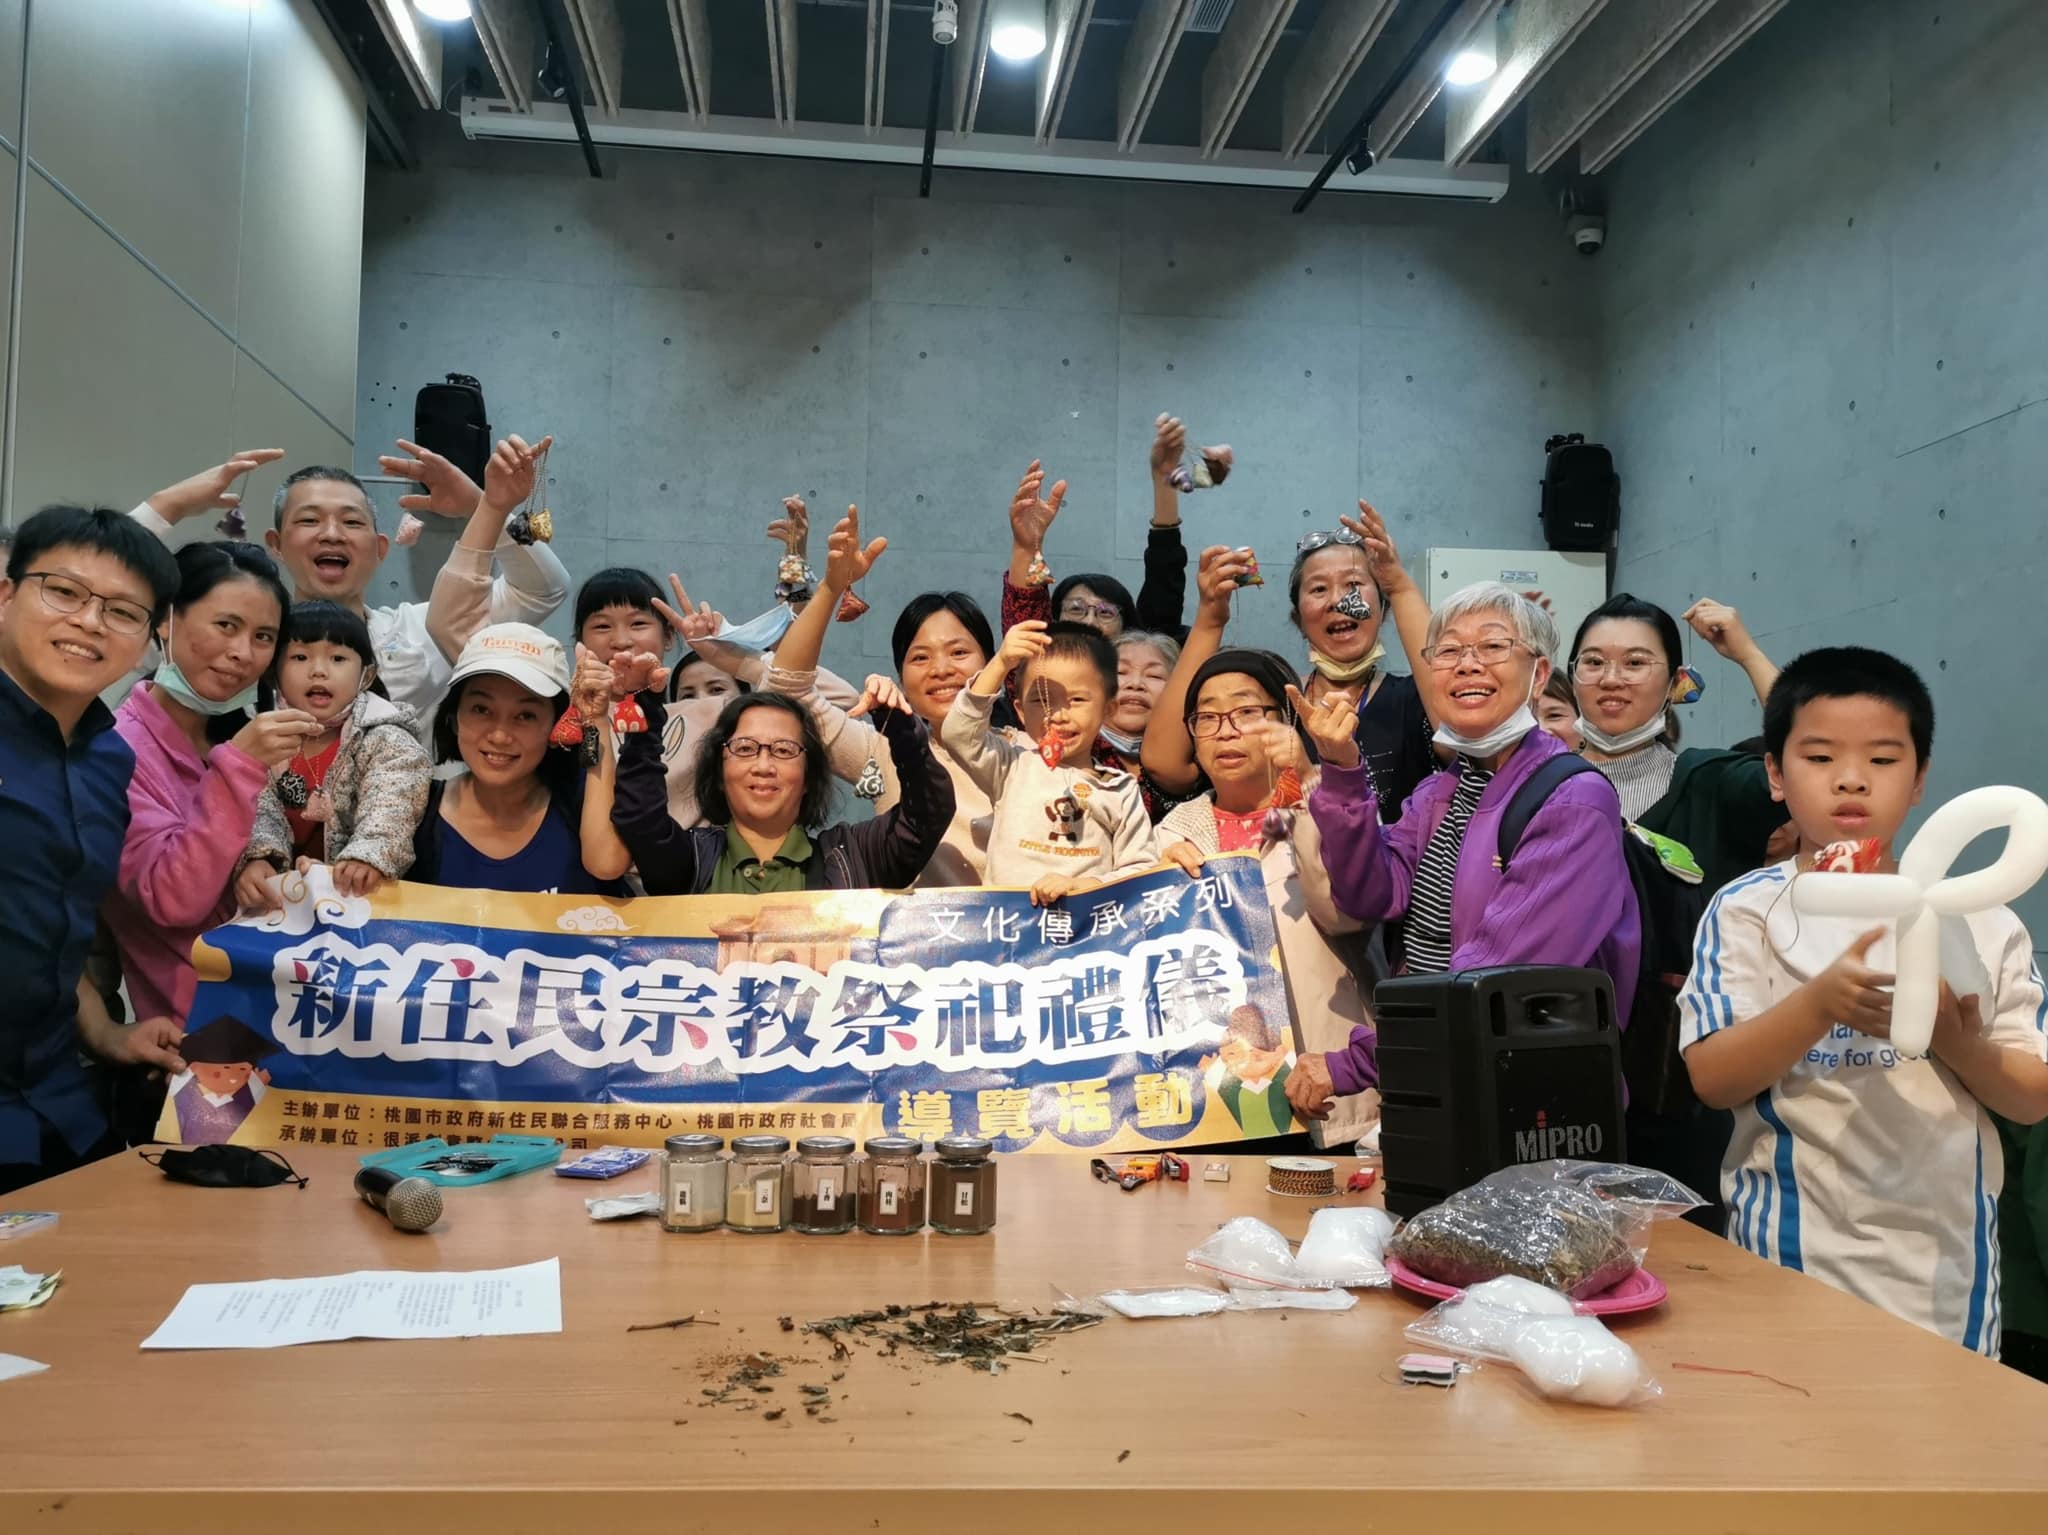 Penduduk baru dan anggota keluarga berpartisipasi dalam pembuatan kerajinan tangan. (Foto/Disediakan oleh Pusat Kebudayaan Penduduk Baru Taoyuan)